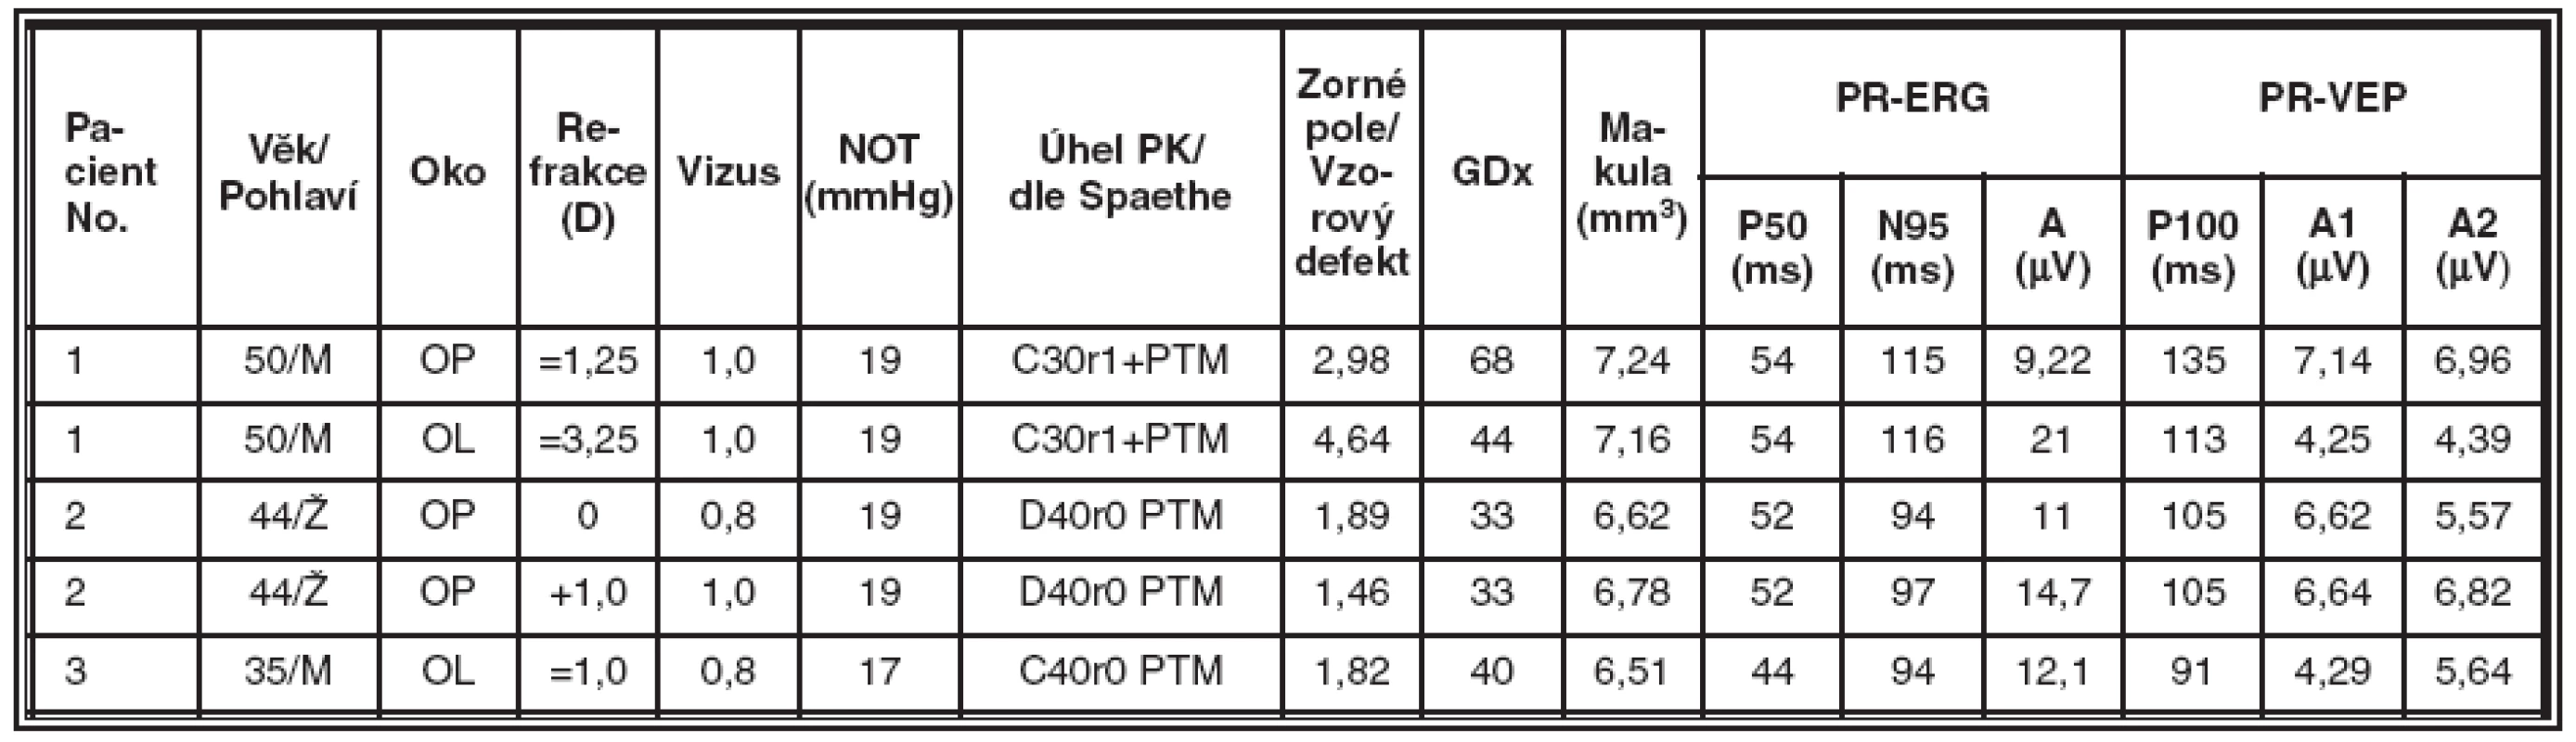 Skupina nemocných s primárním glaukomem s otevřeným úhlem (POAG), souhrnné výsledky jednotlivých typů vyšetření v této skupině